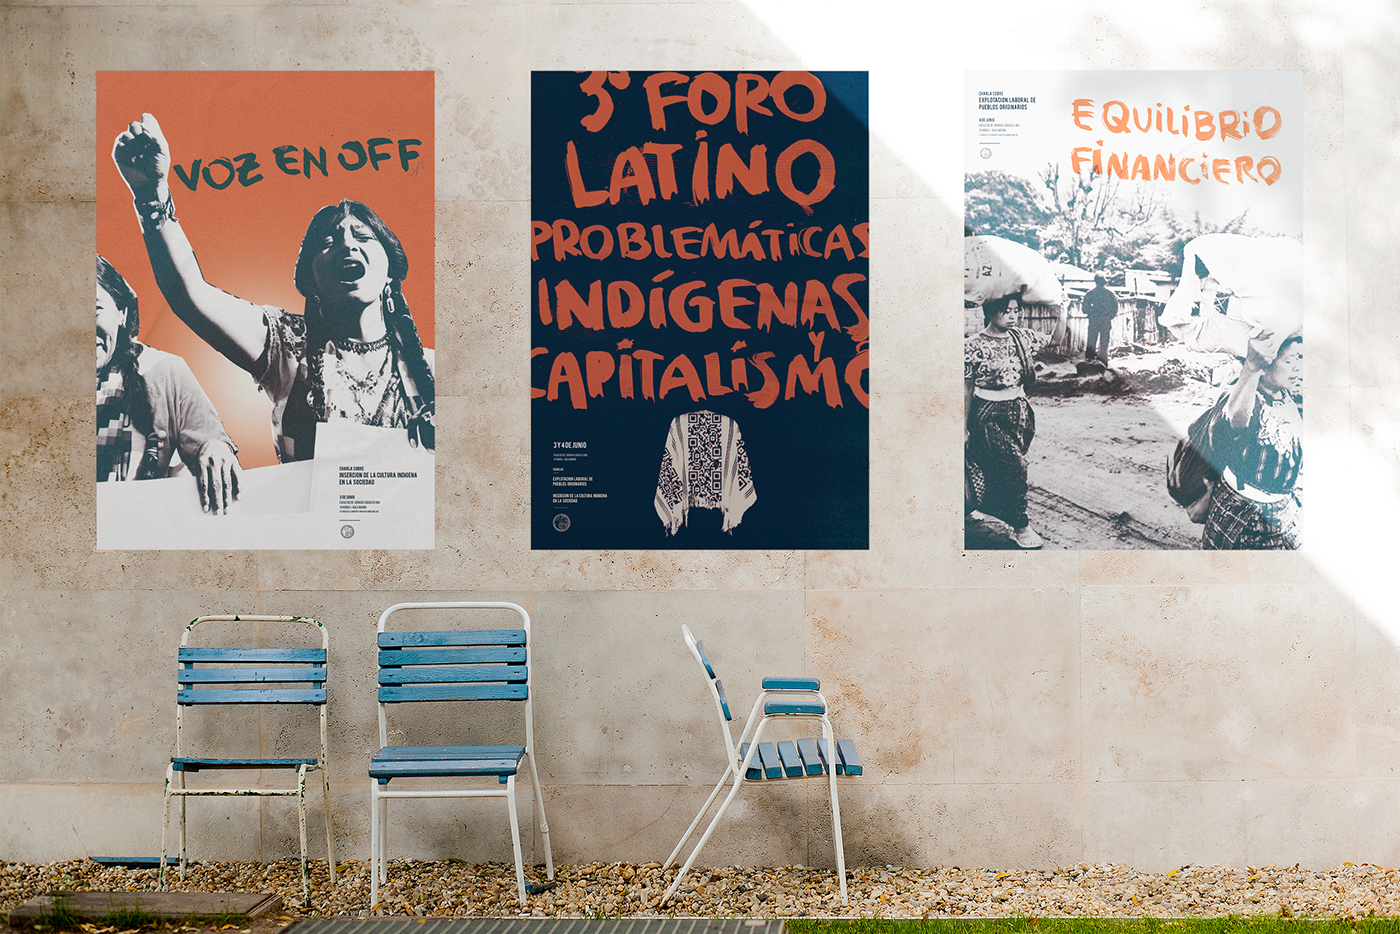 sistema Afiches posters Gabriele nivel 3 gabriele 3 estados del mundo fadu uba Poster Design retorico problematicas indigenas argentina pueblos originarios mapuche